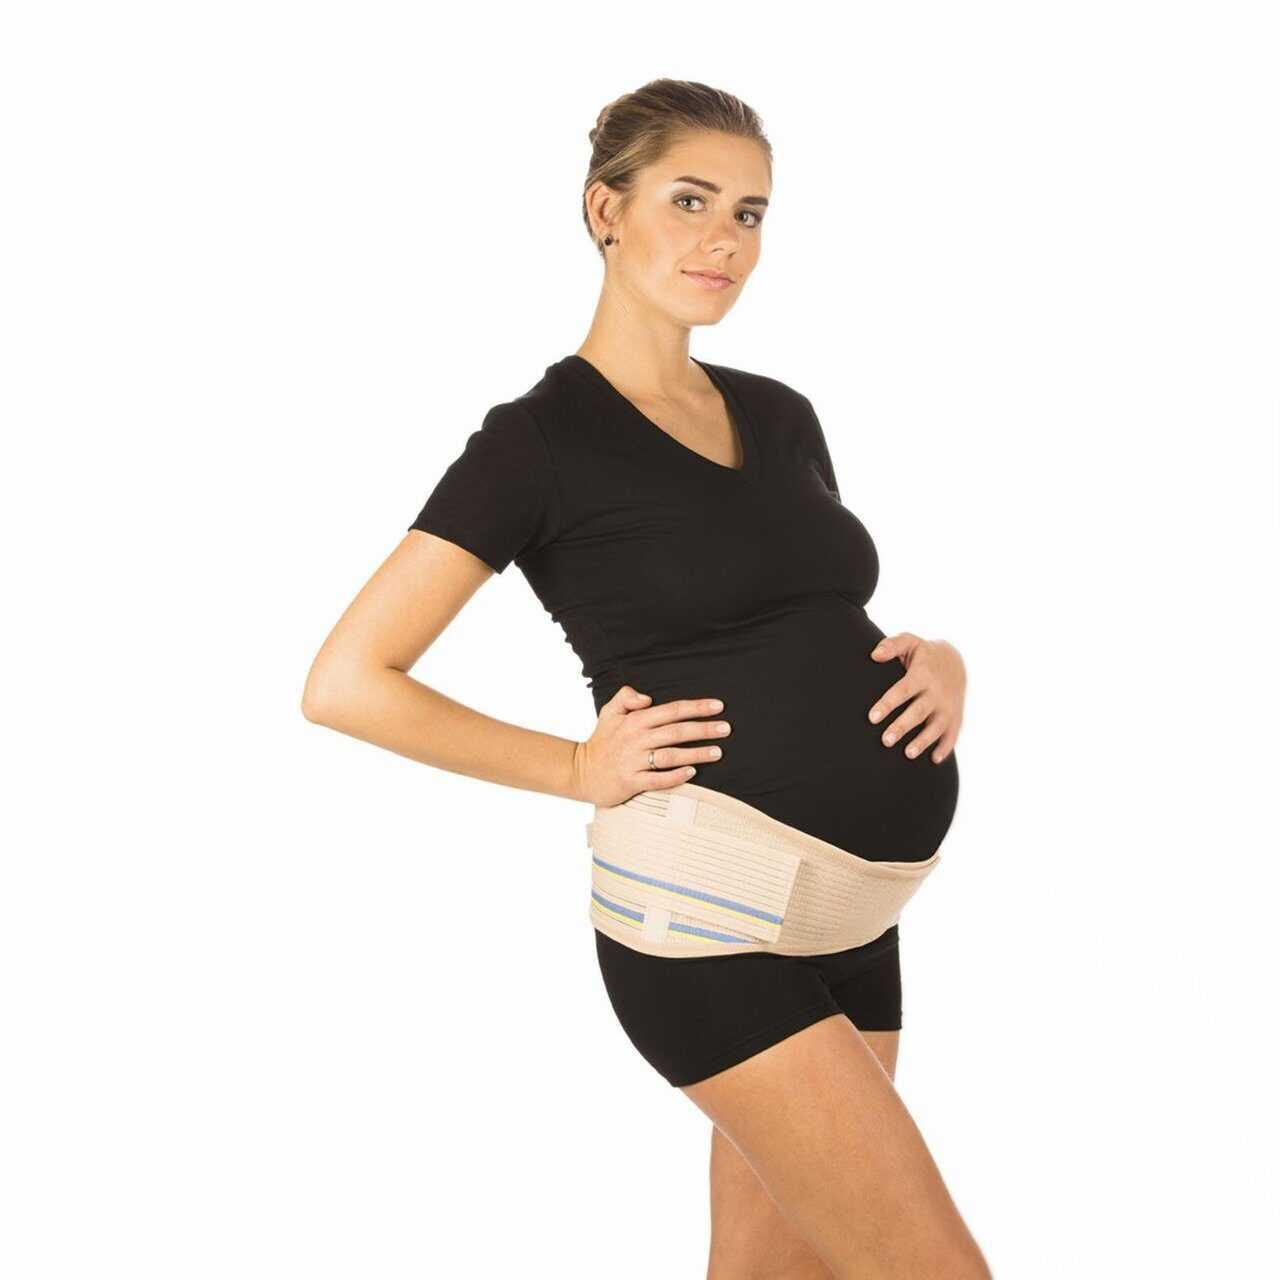 Популярные и лучшие бандажи для беременных на разных сроках, а также универсальные модели, которые пригодятся после родов